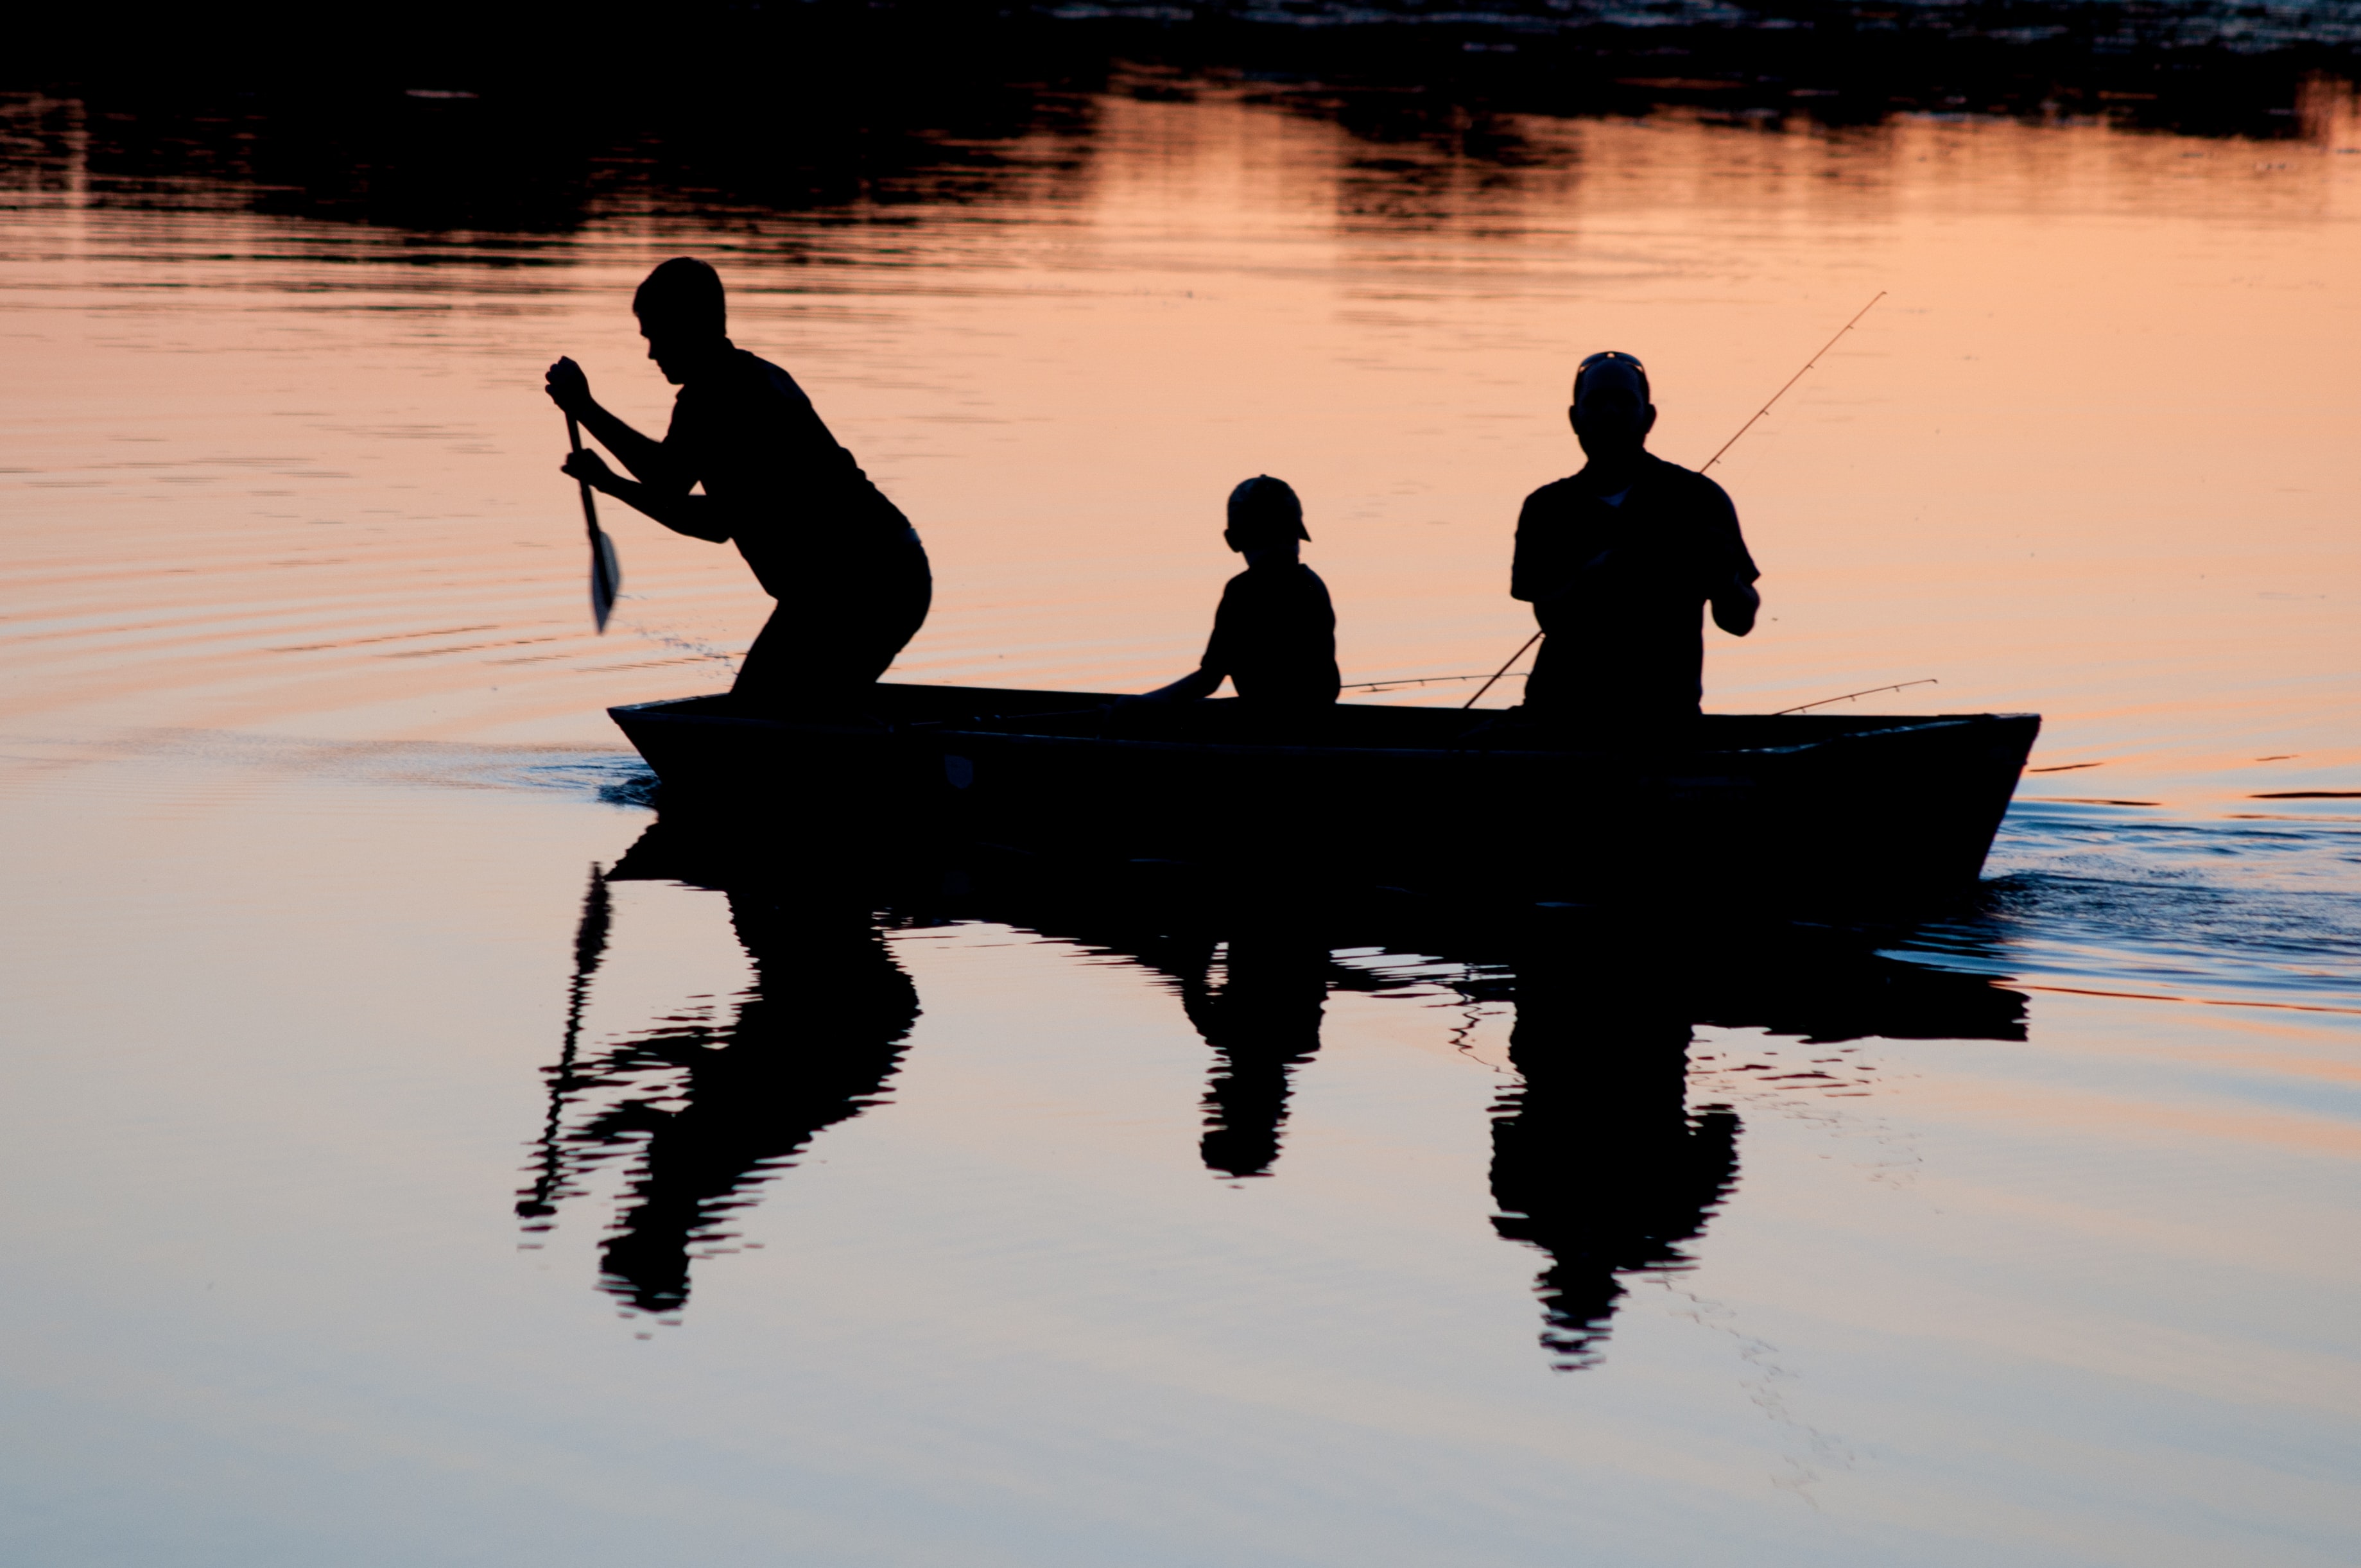 Fishing in Manitoba's lakes